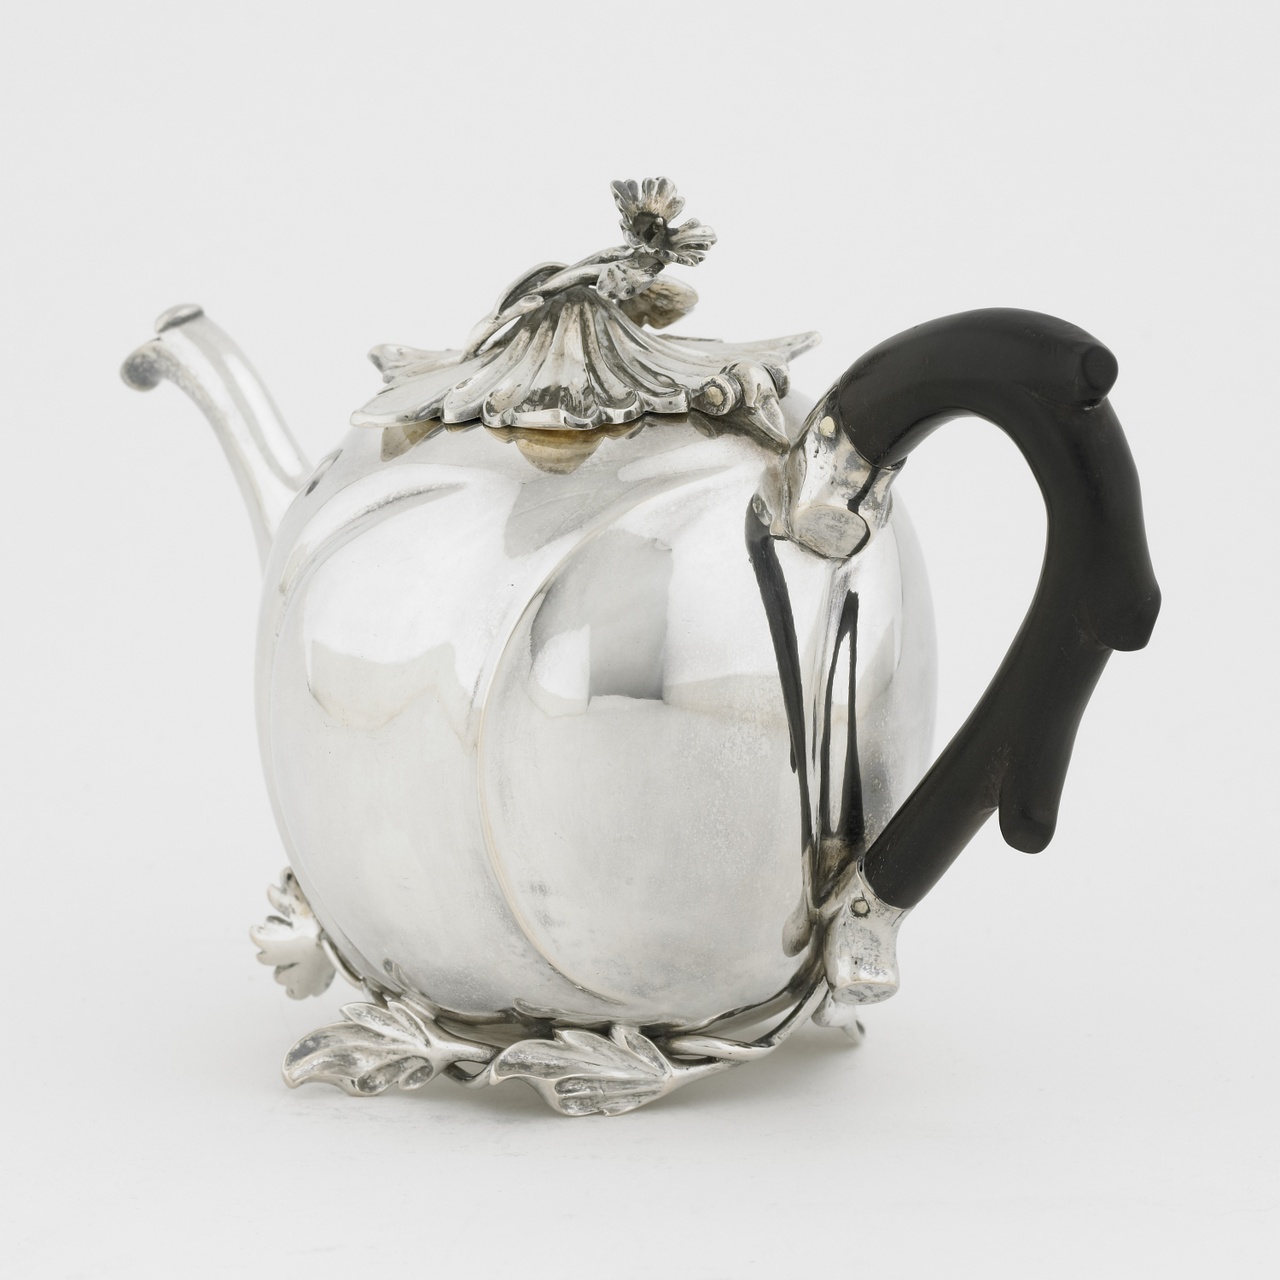 Zilveren melkkan behorend bij theeservies geschonken aan prof. Kluyt, Philippus Prié